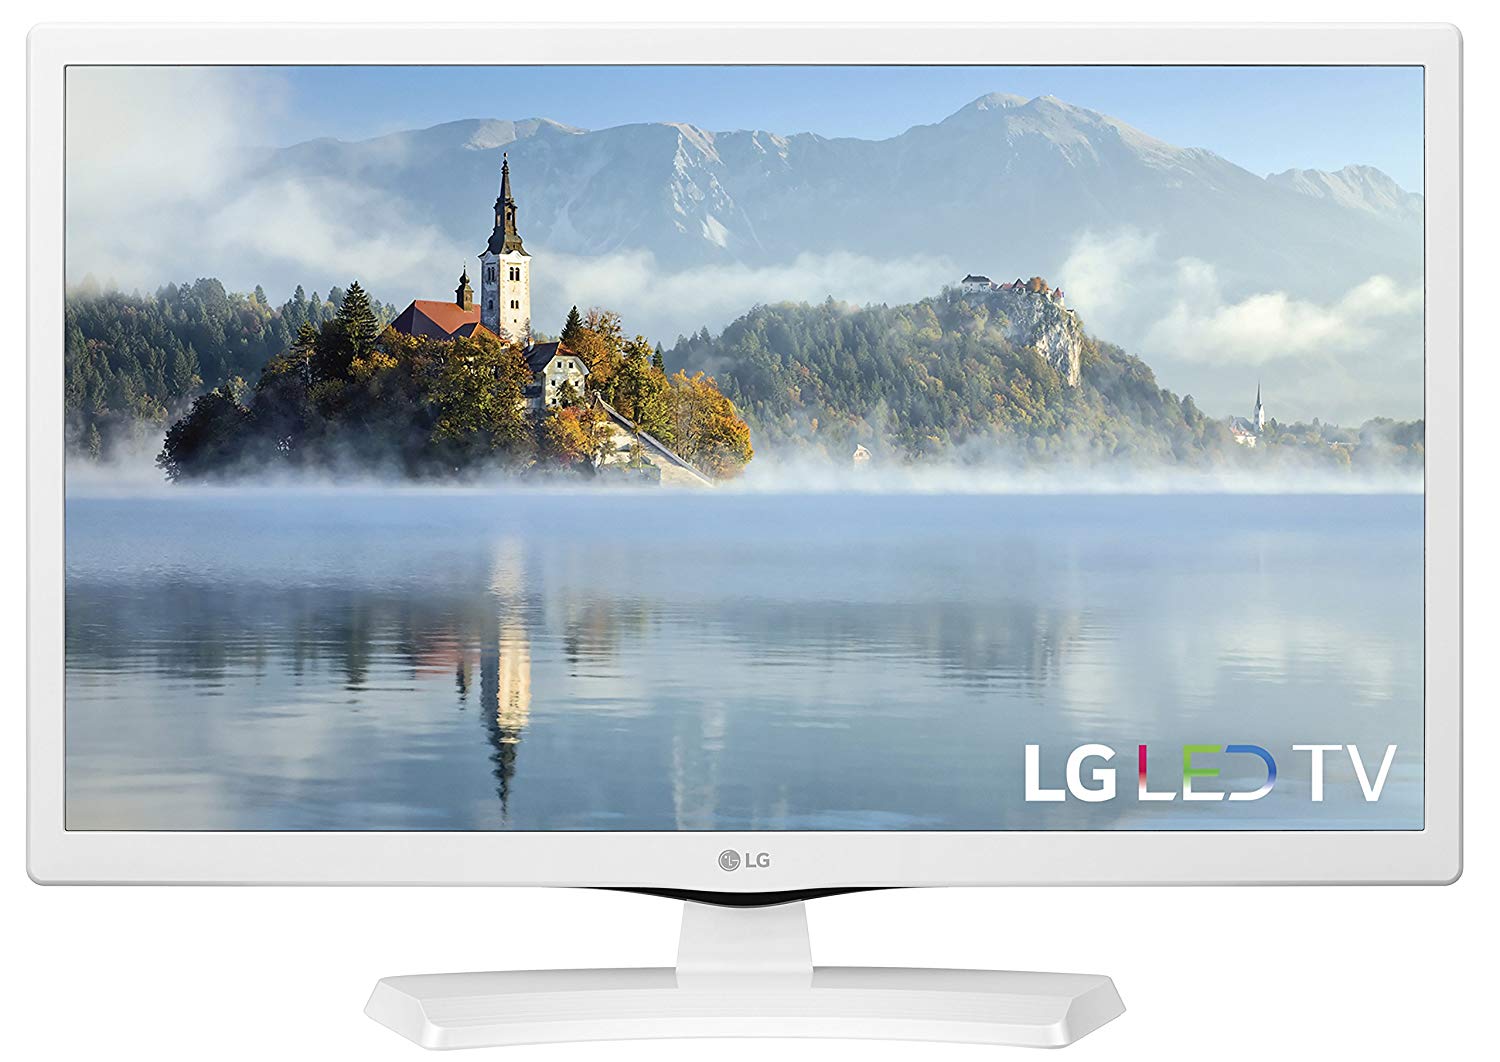 LG Electronics 24LJ4540-WU 24-Inch 720p LED TV (2017 Model)